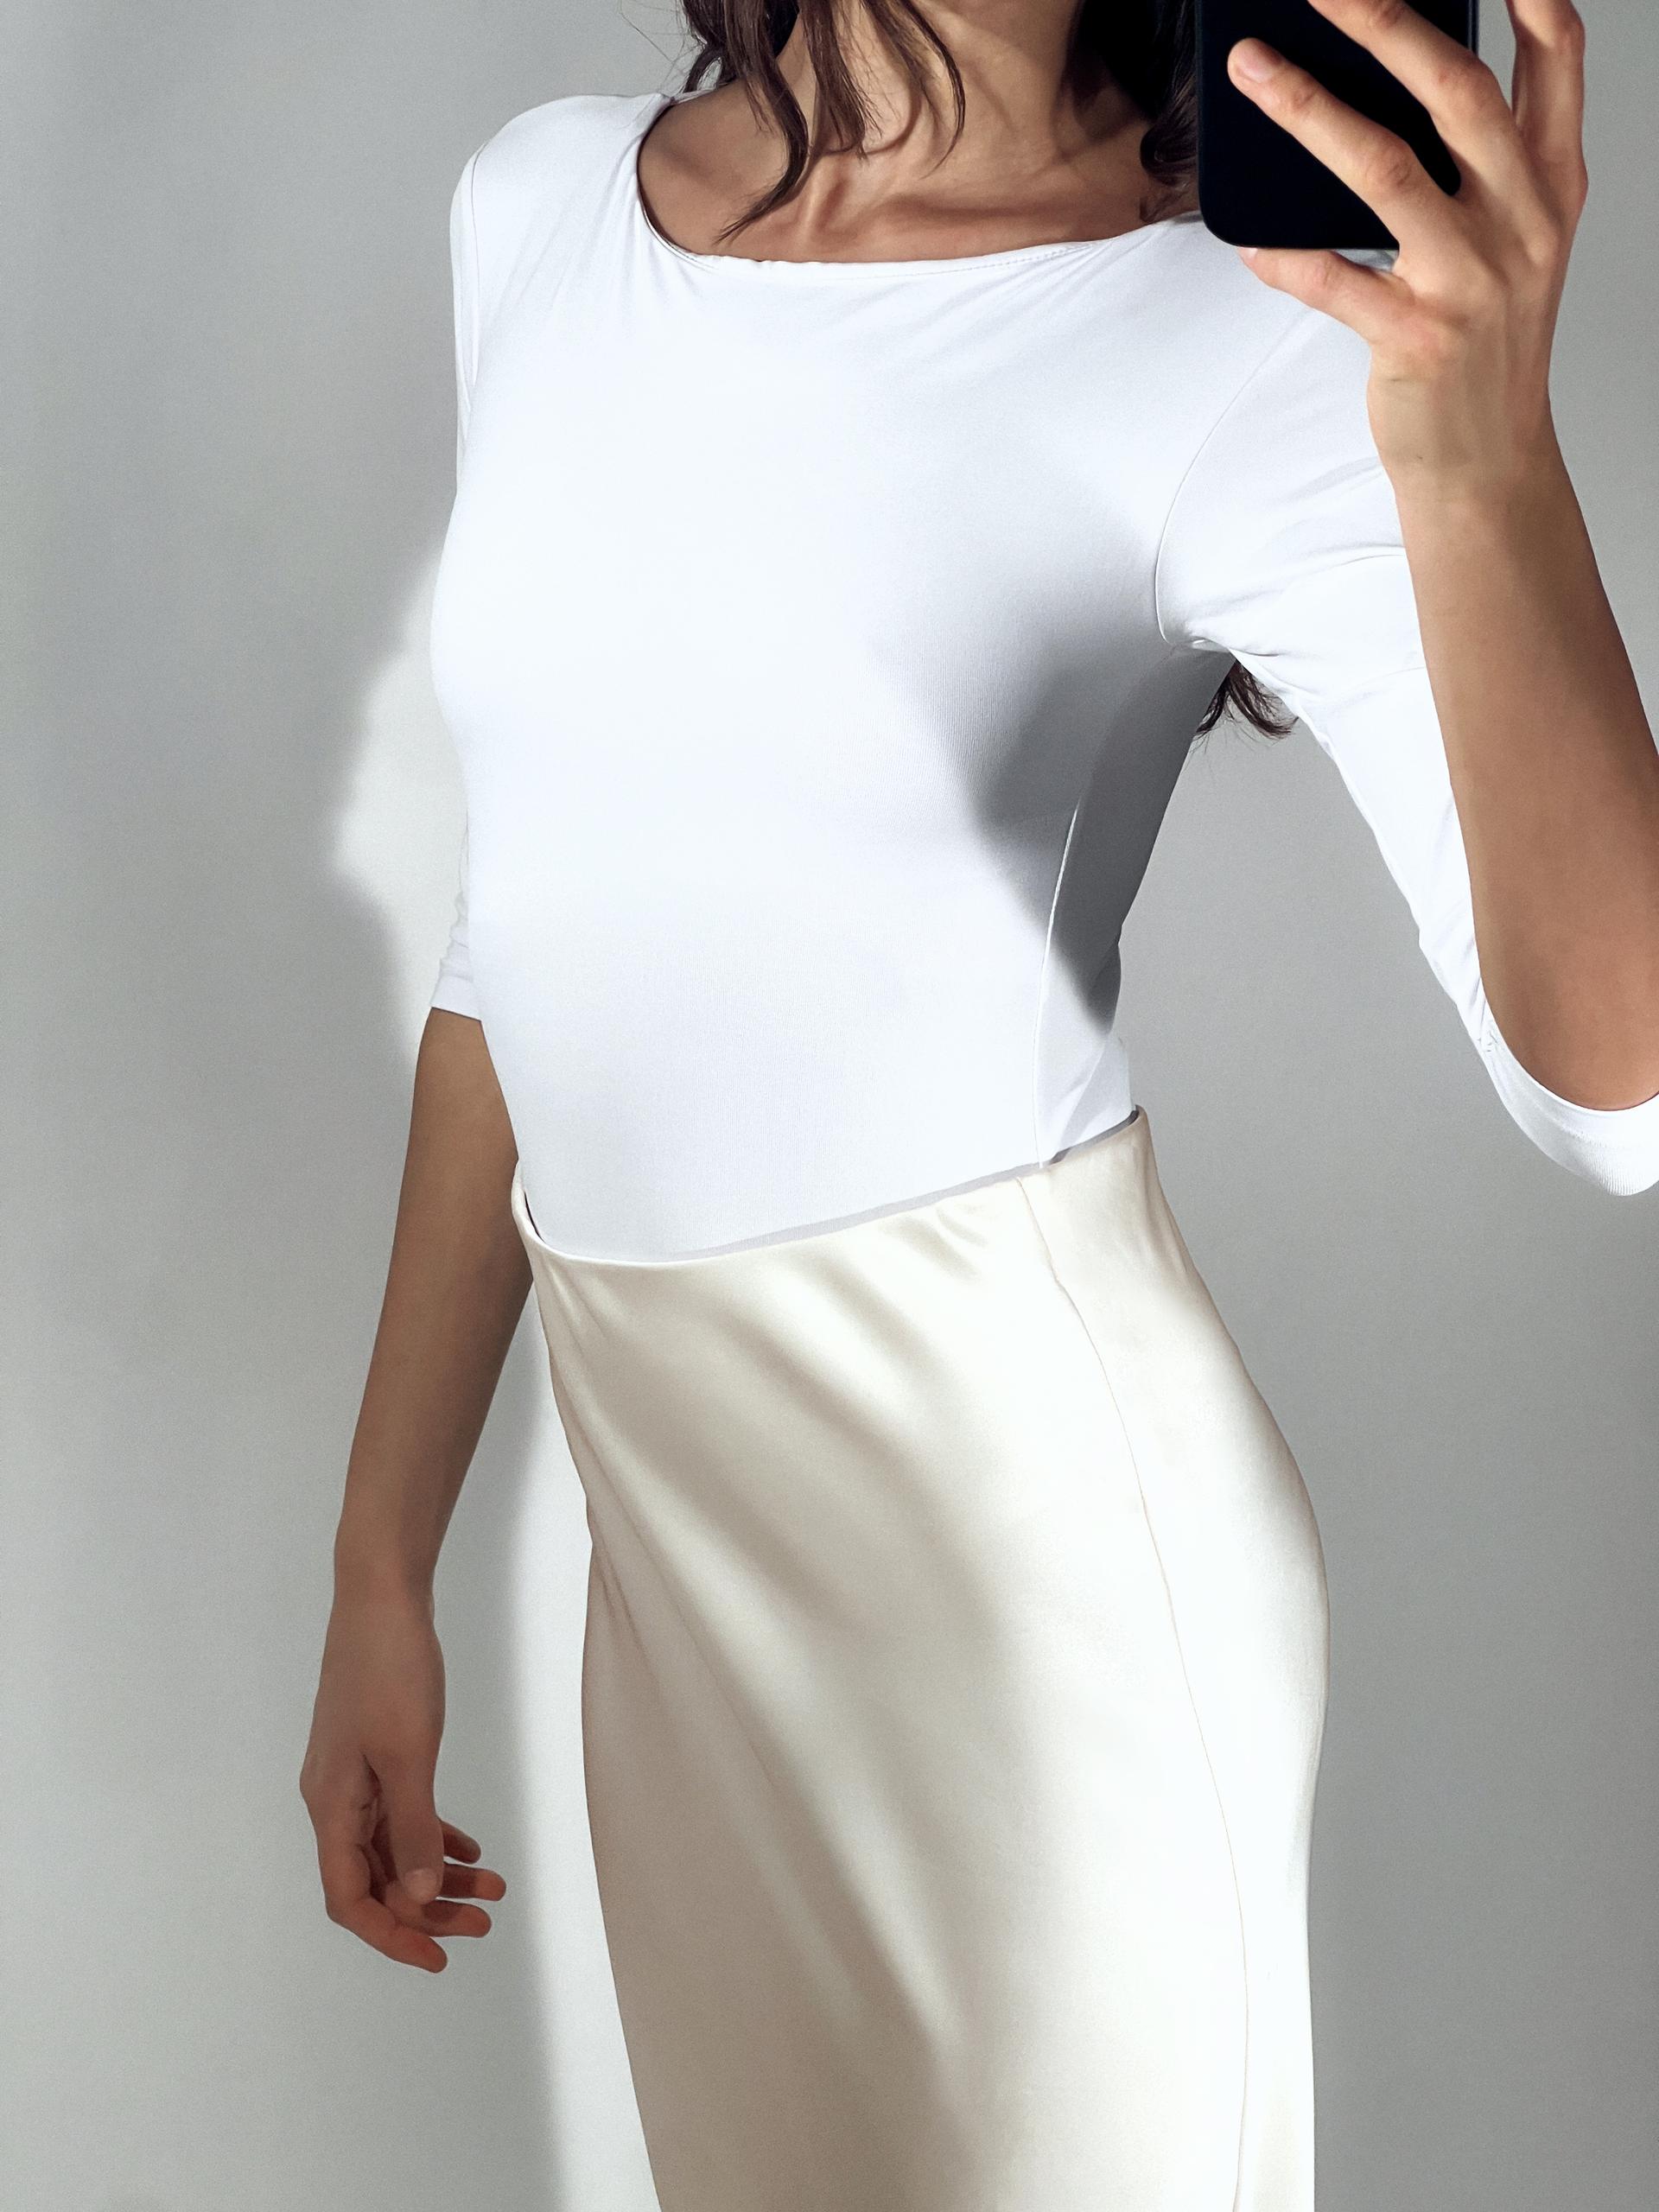 ZARA Wrap Bodysuit Top 5039/847 - M size (new with tags)